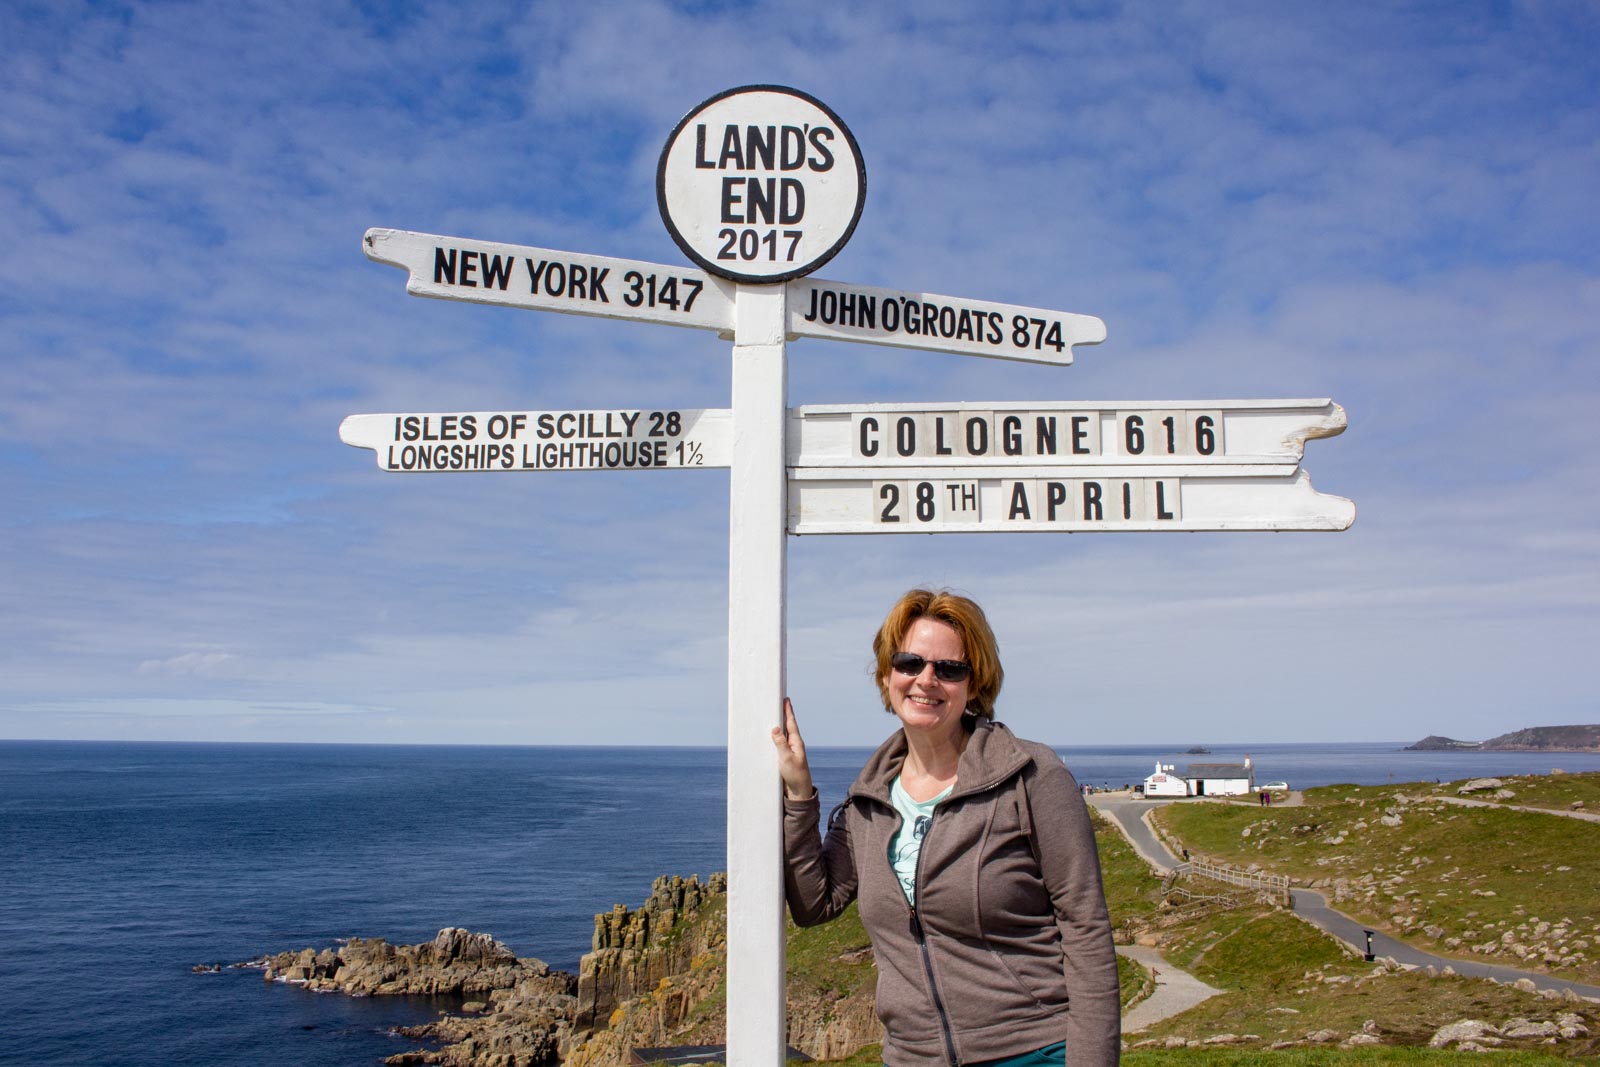 Alleine am Richtungsweiser von Land's End mit Schildern für New Yrk, John O'Groats, Isles of Scilly und Cologne